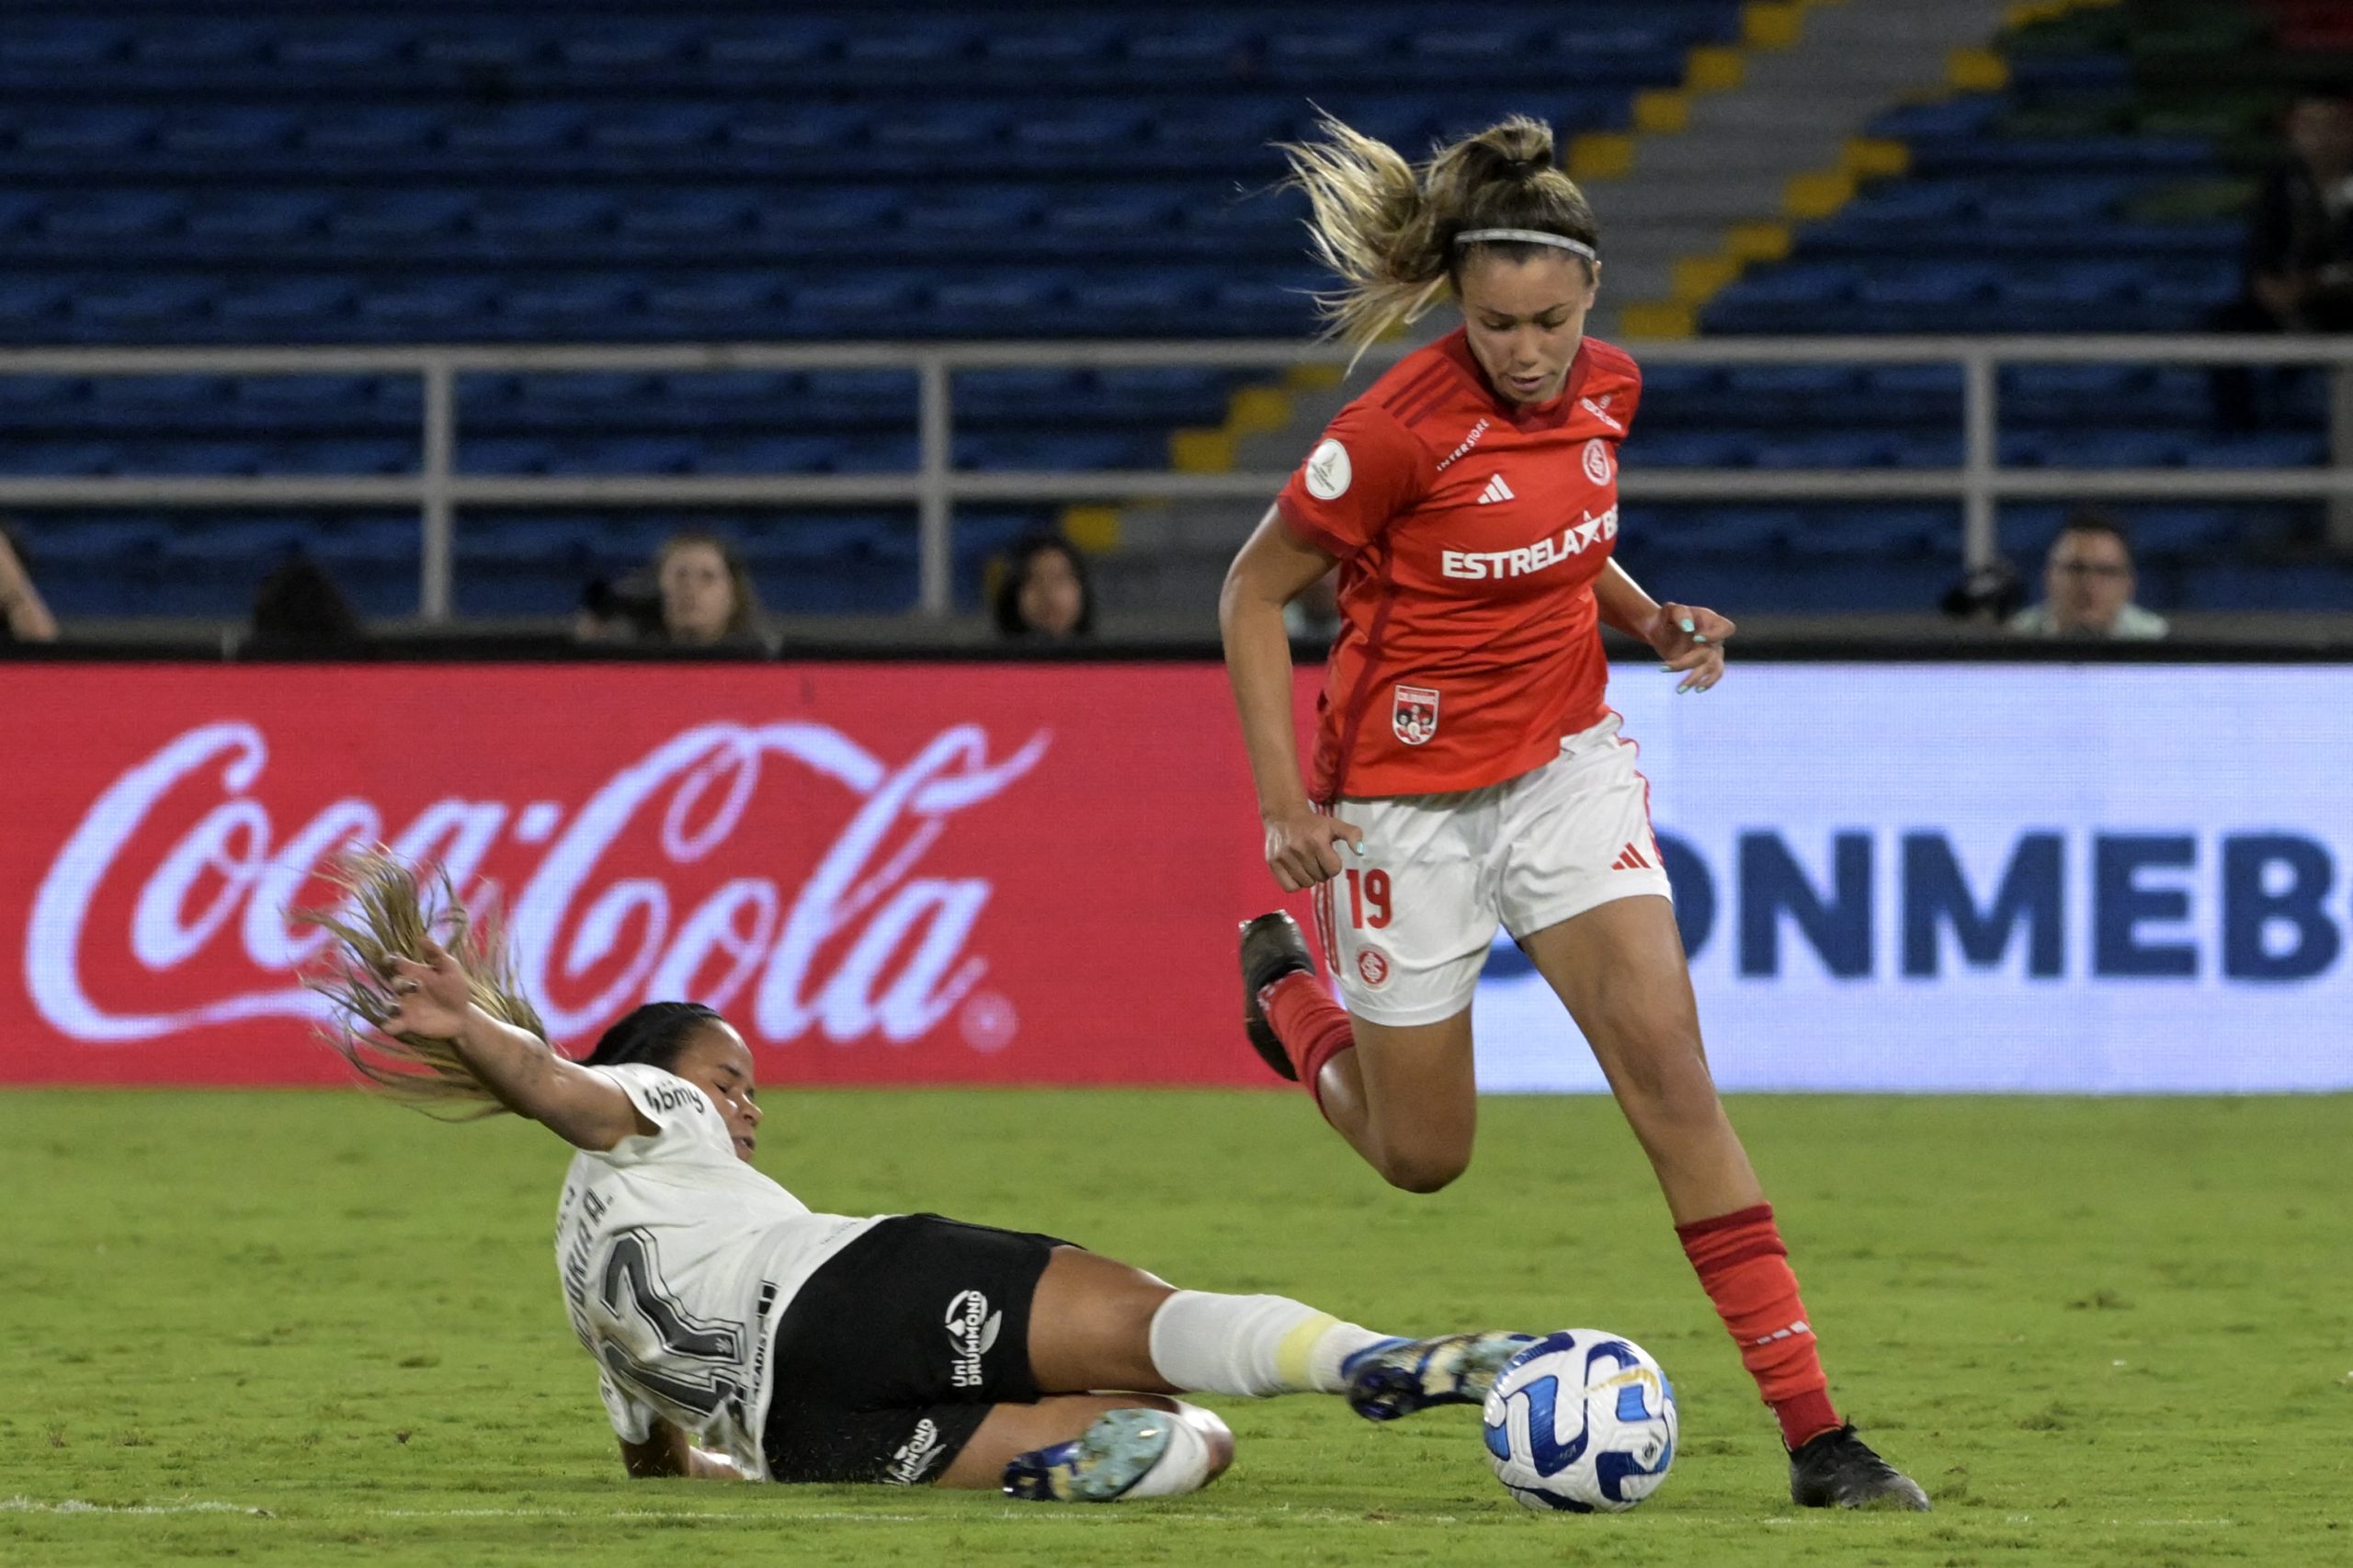 Atacante Priscila do Internacional na partida contra o Corinthians, pela Copa Libertadores Feminina - (Foto: de JOAQUIN SARMIENTO/AFP via Getty Images)